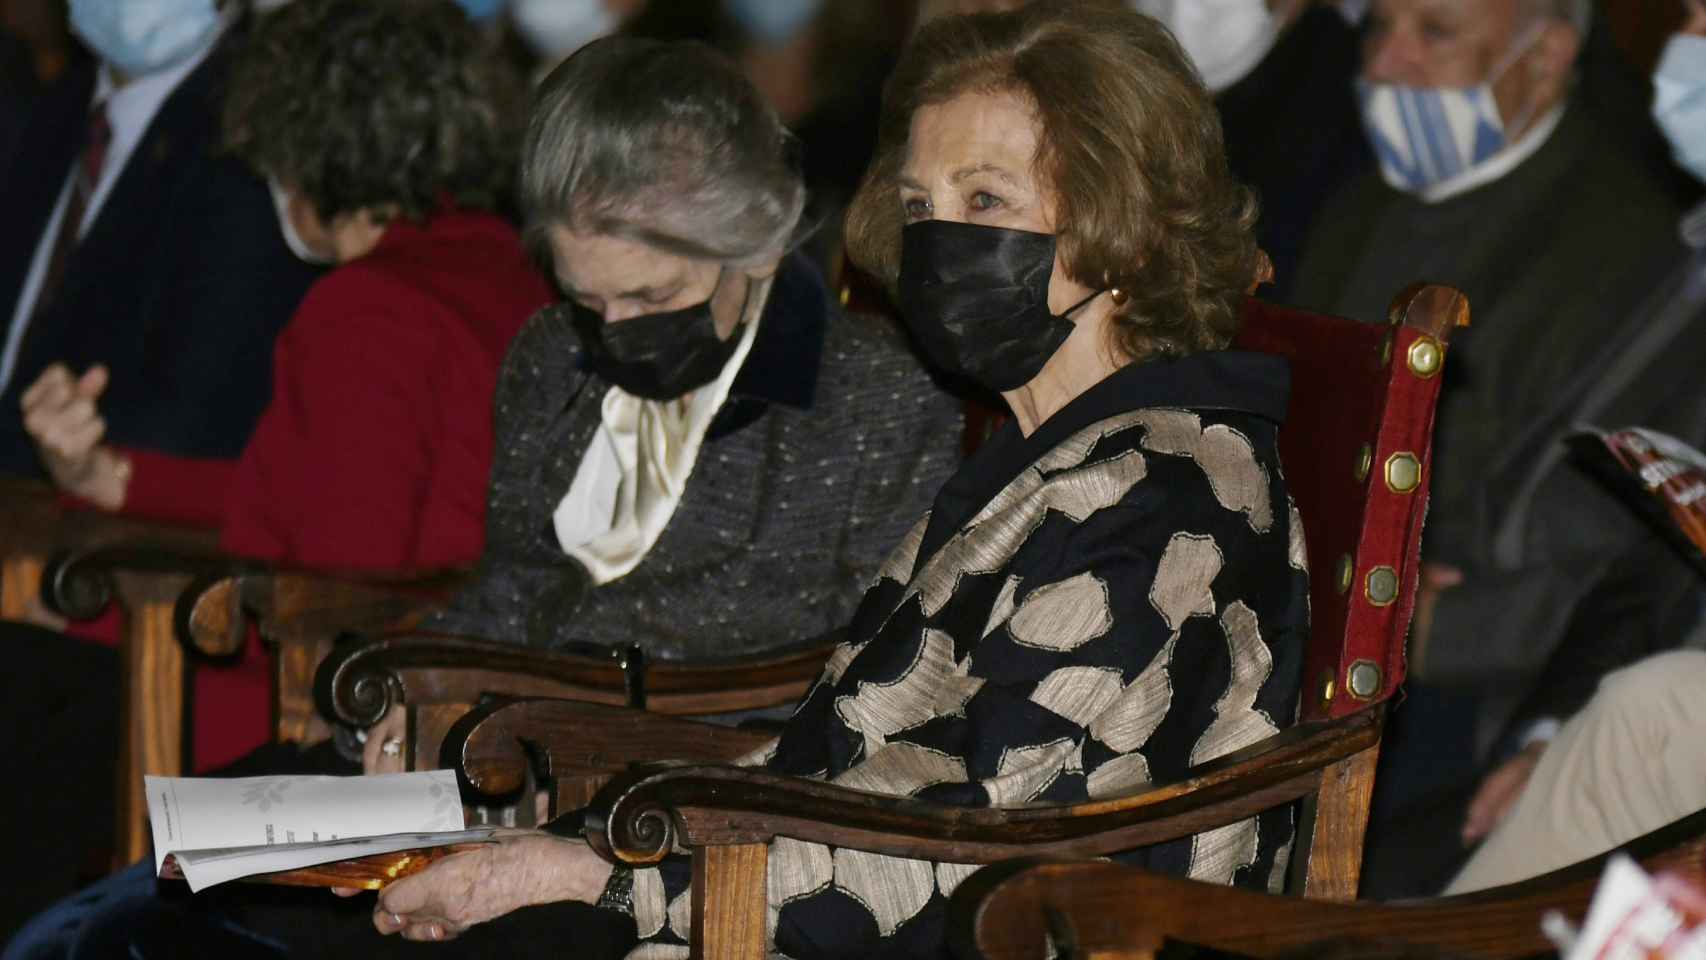 La reina Sofía asistió al acto junto a su hermana, Irene de Grecia.